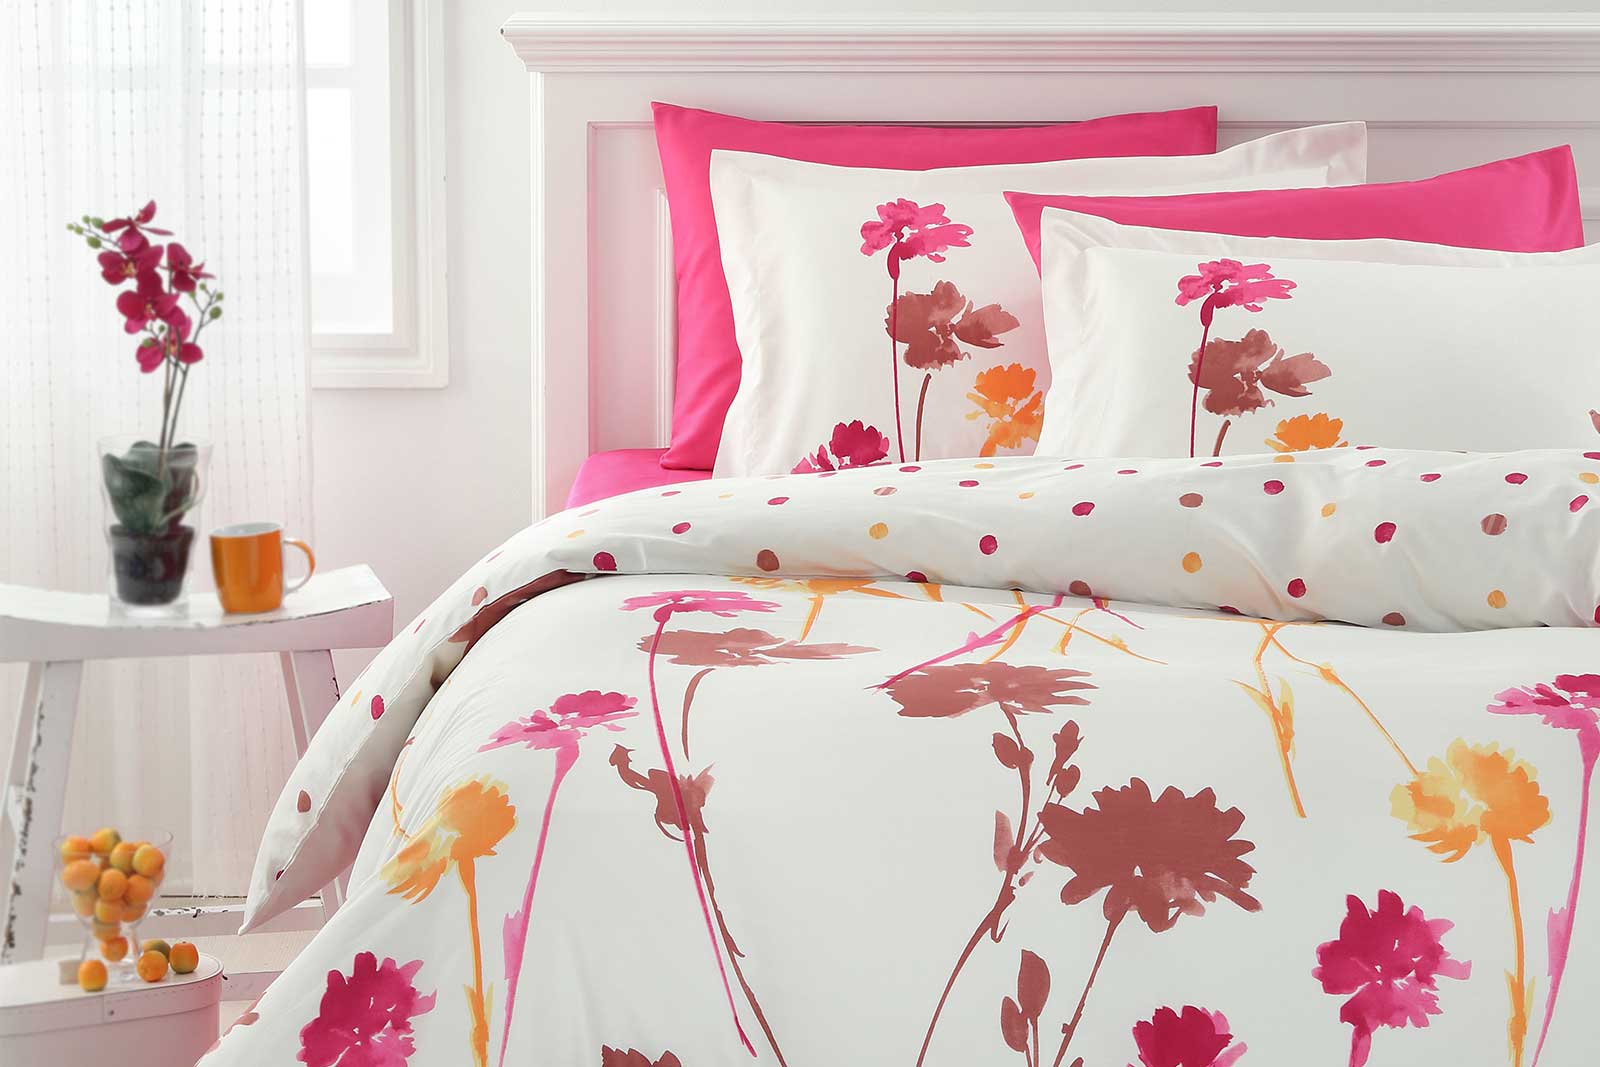 Pink & White Bed Sheet